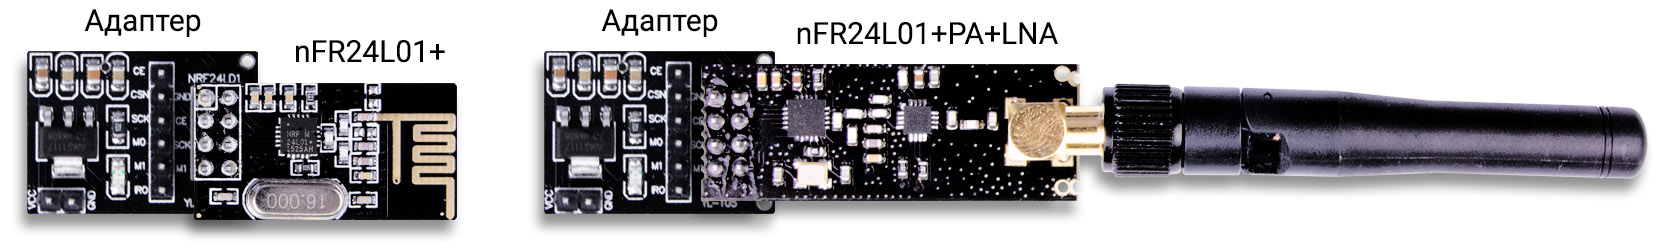 Подключение nRF24L01 к адаптеру